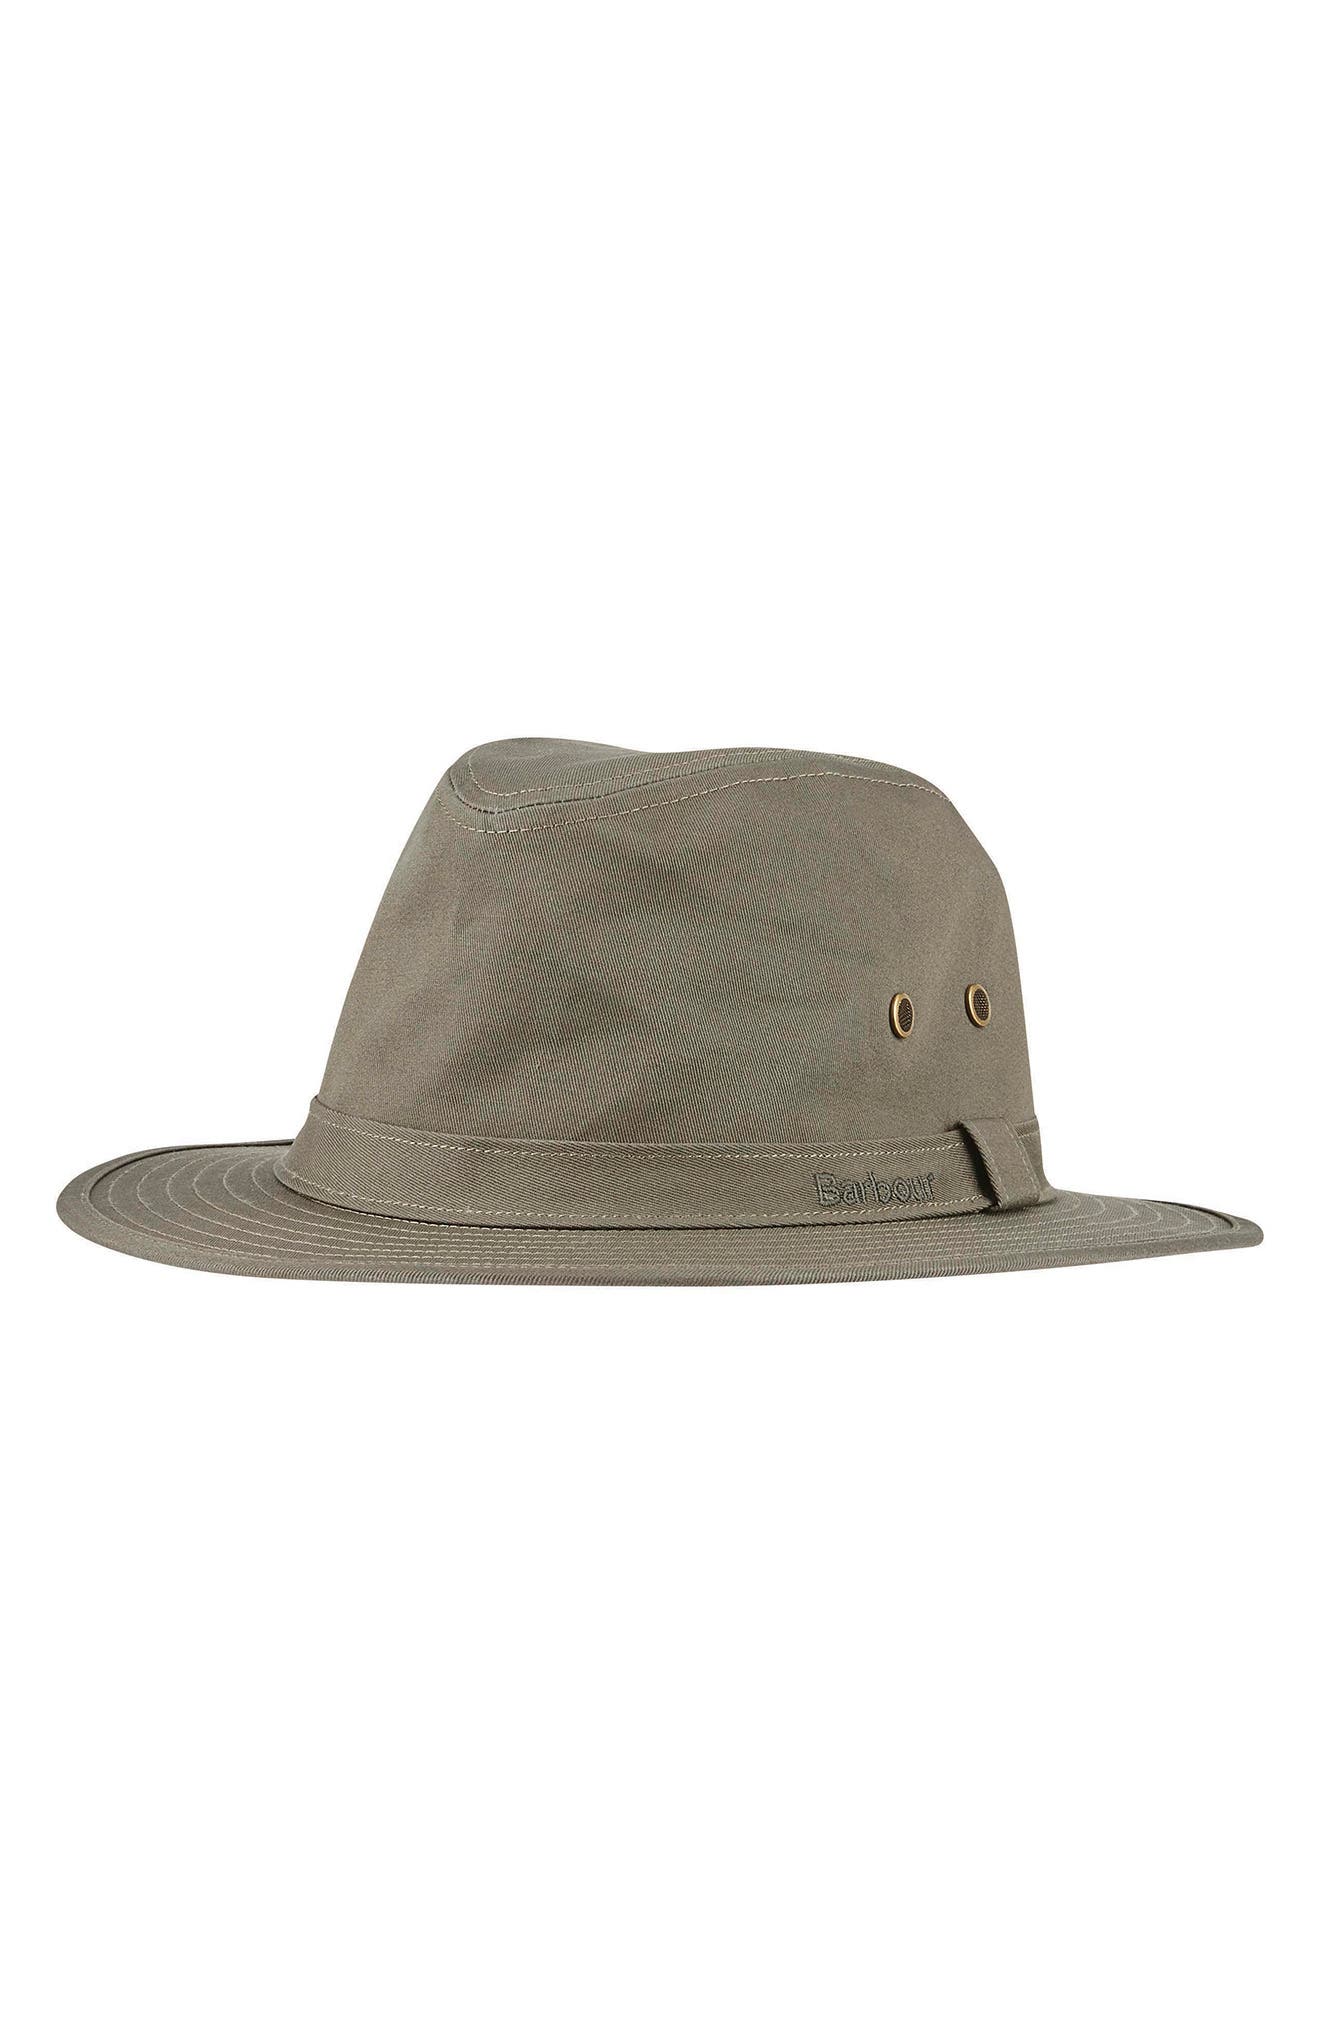 barbour hat sale